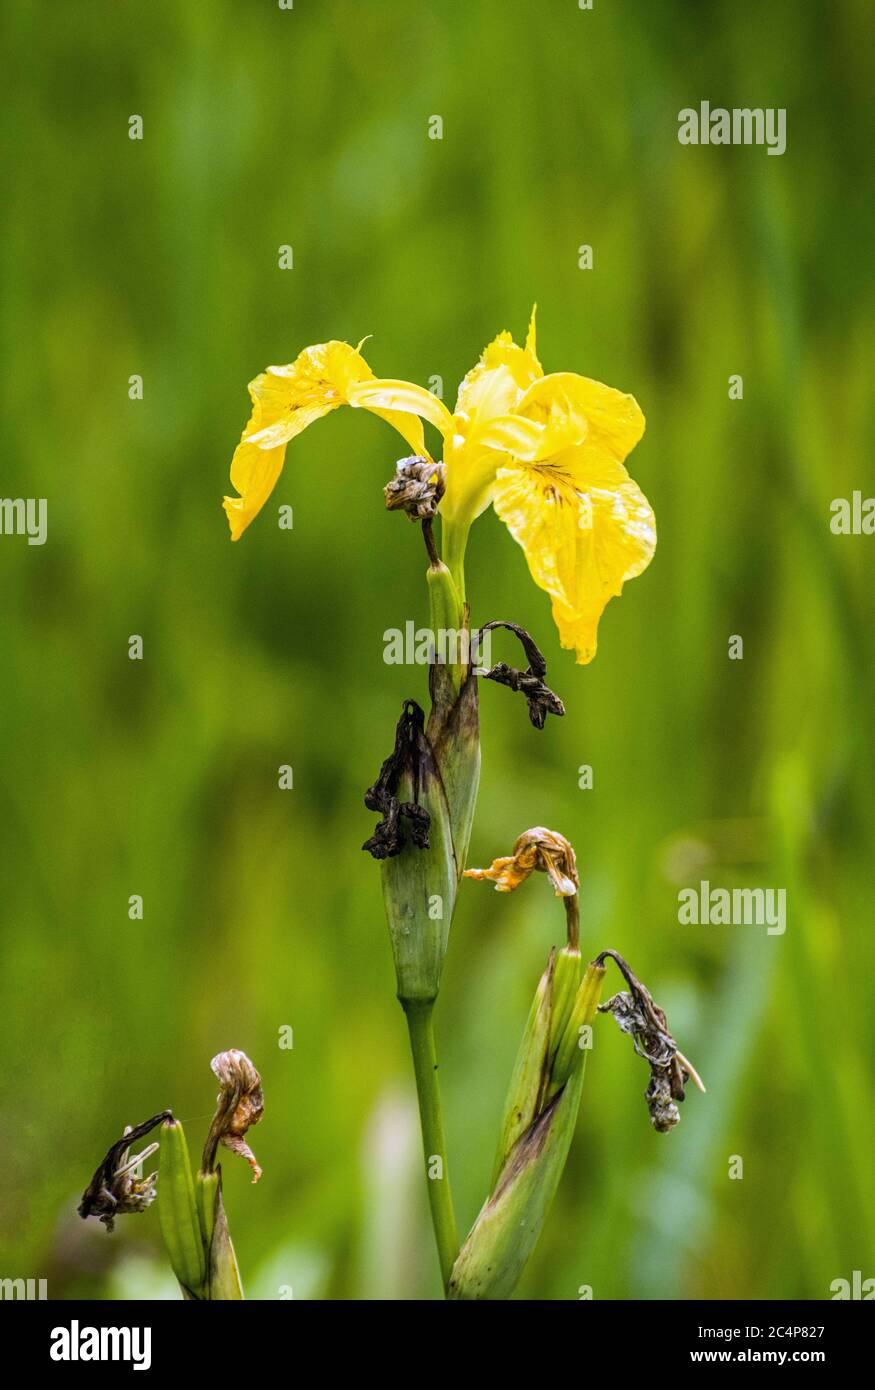 Bandiera gialla Iris che cresce in una macchia paludosa di un prato. Il formato della foto è verticale. Foto Stock